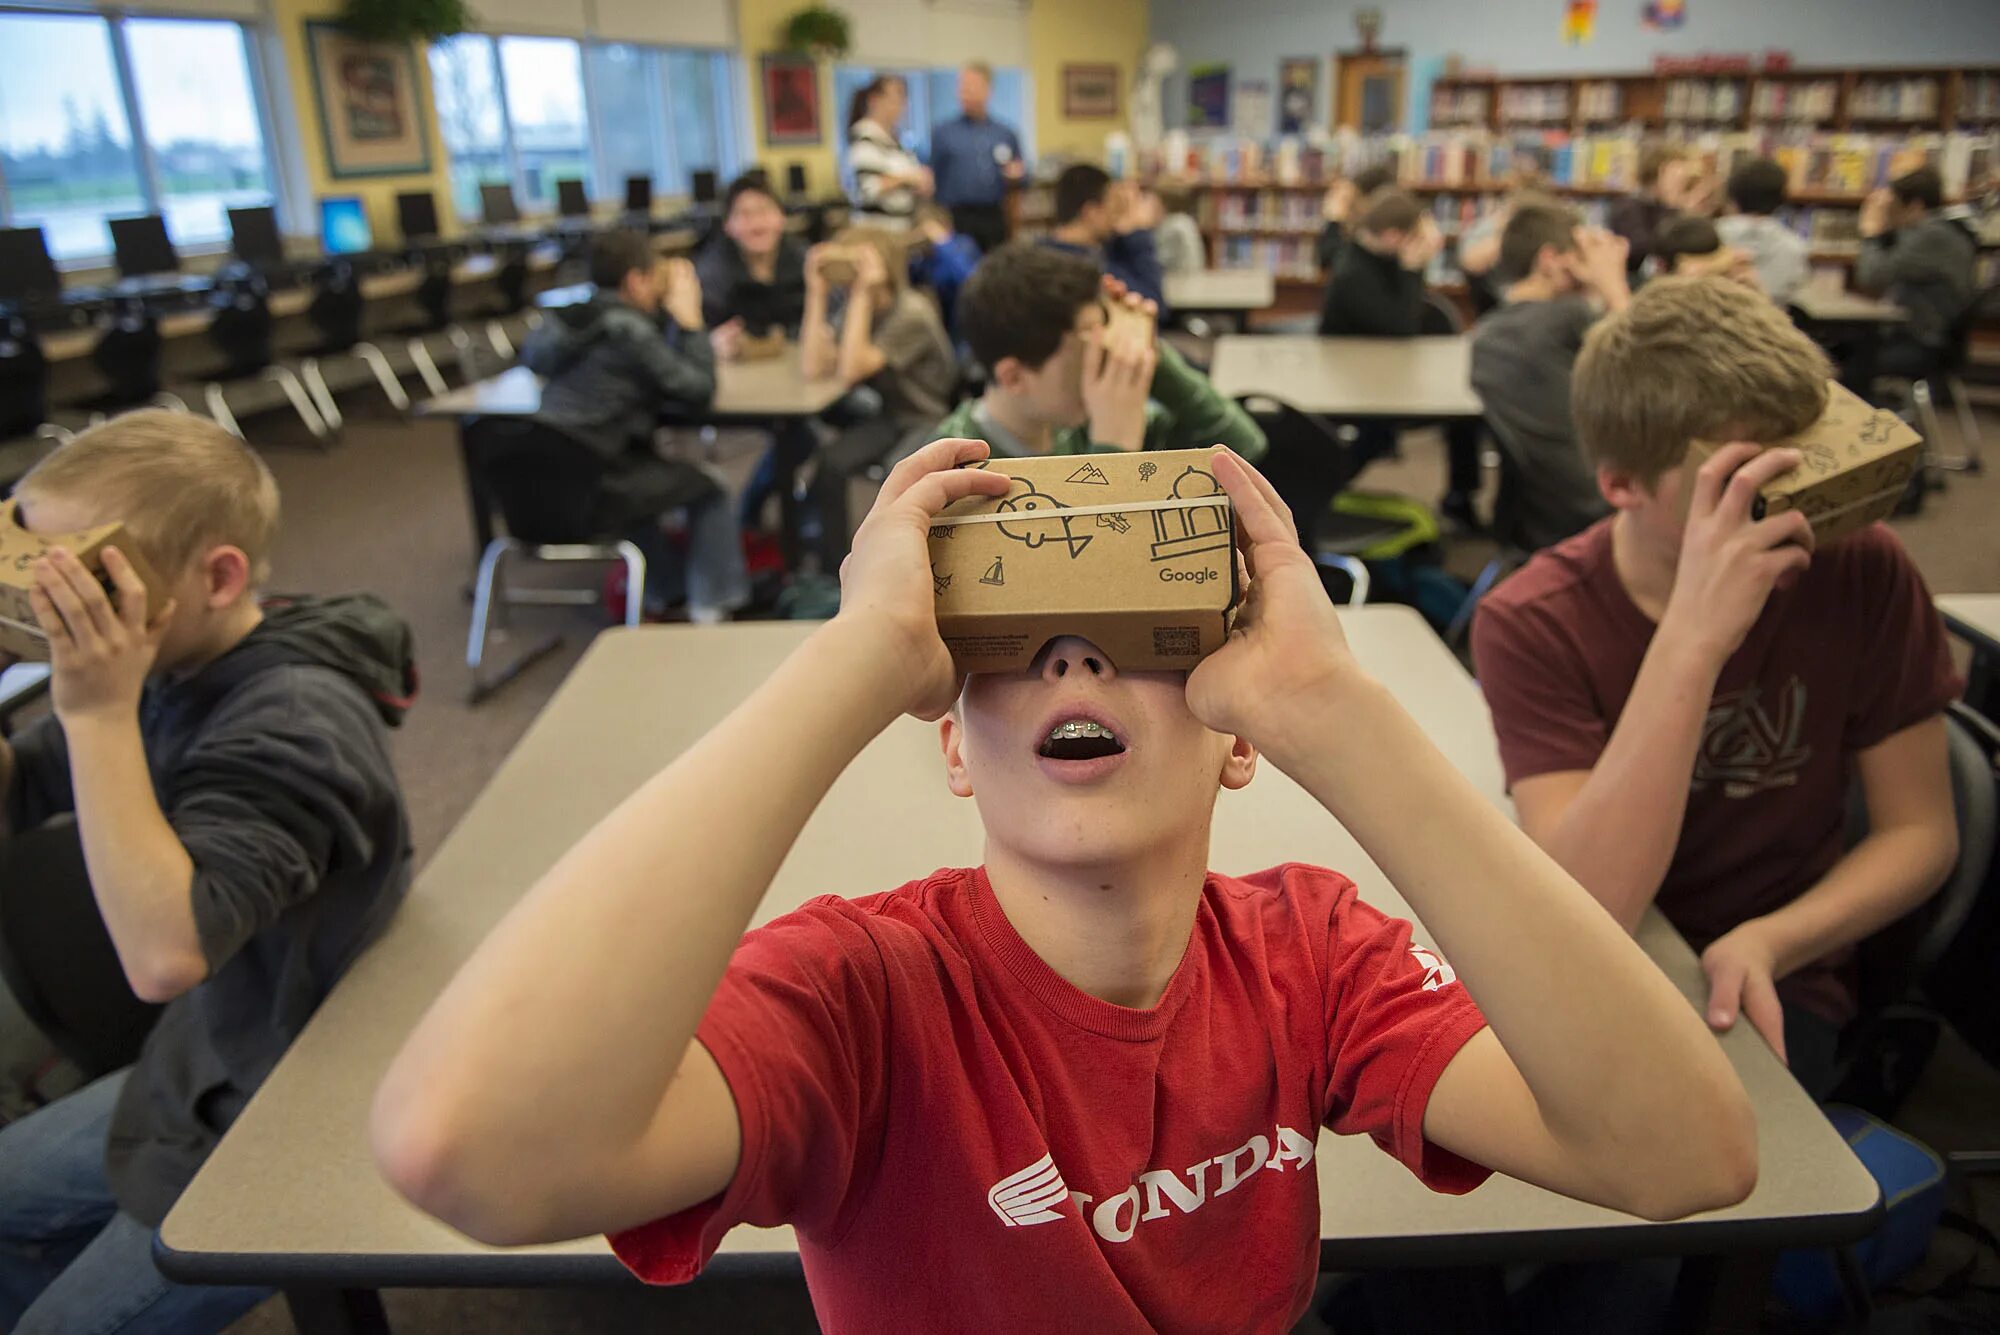 Виртуальная реальность в учебе. Шлем виртуальной реальности в школе. Очки виртуальной реальности в школе. Школьники в ВР. Школа vr